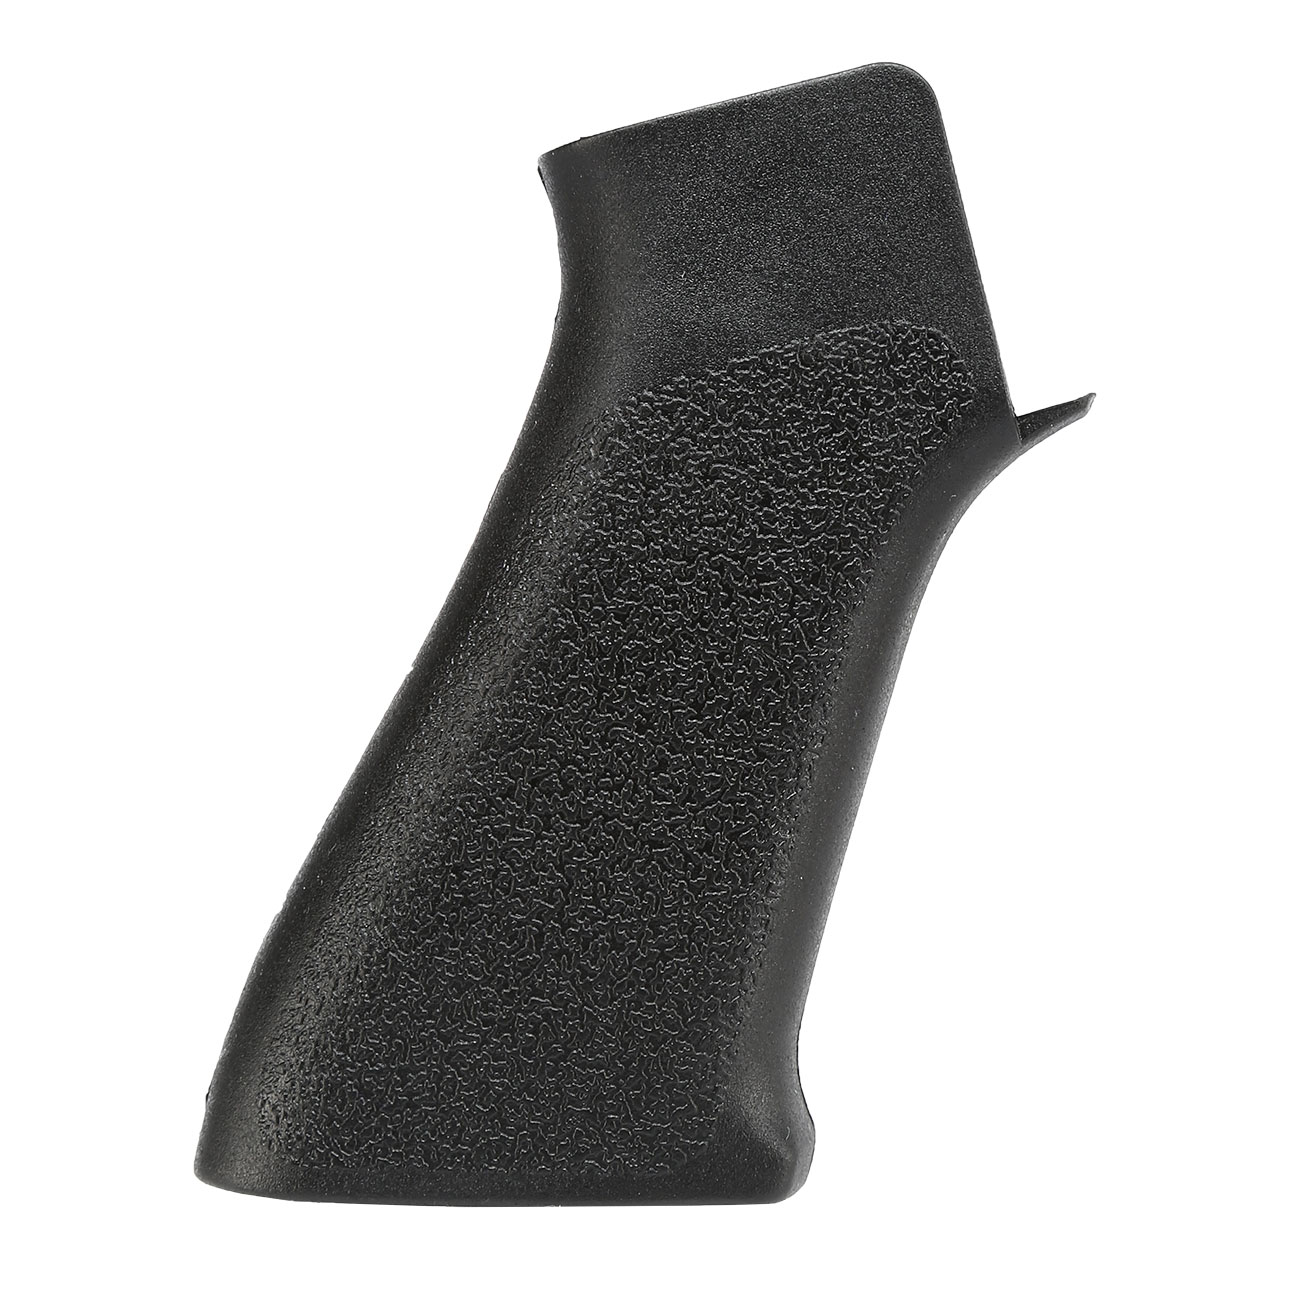 Element M4 / M16 416-Style Pistol Grip Griffstck schwarz Bild 3